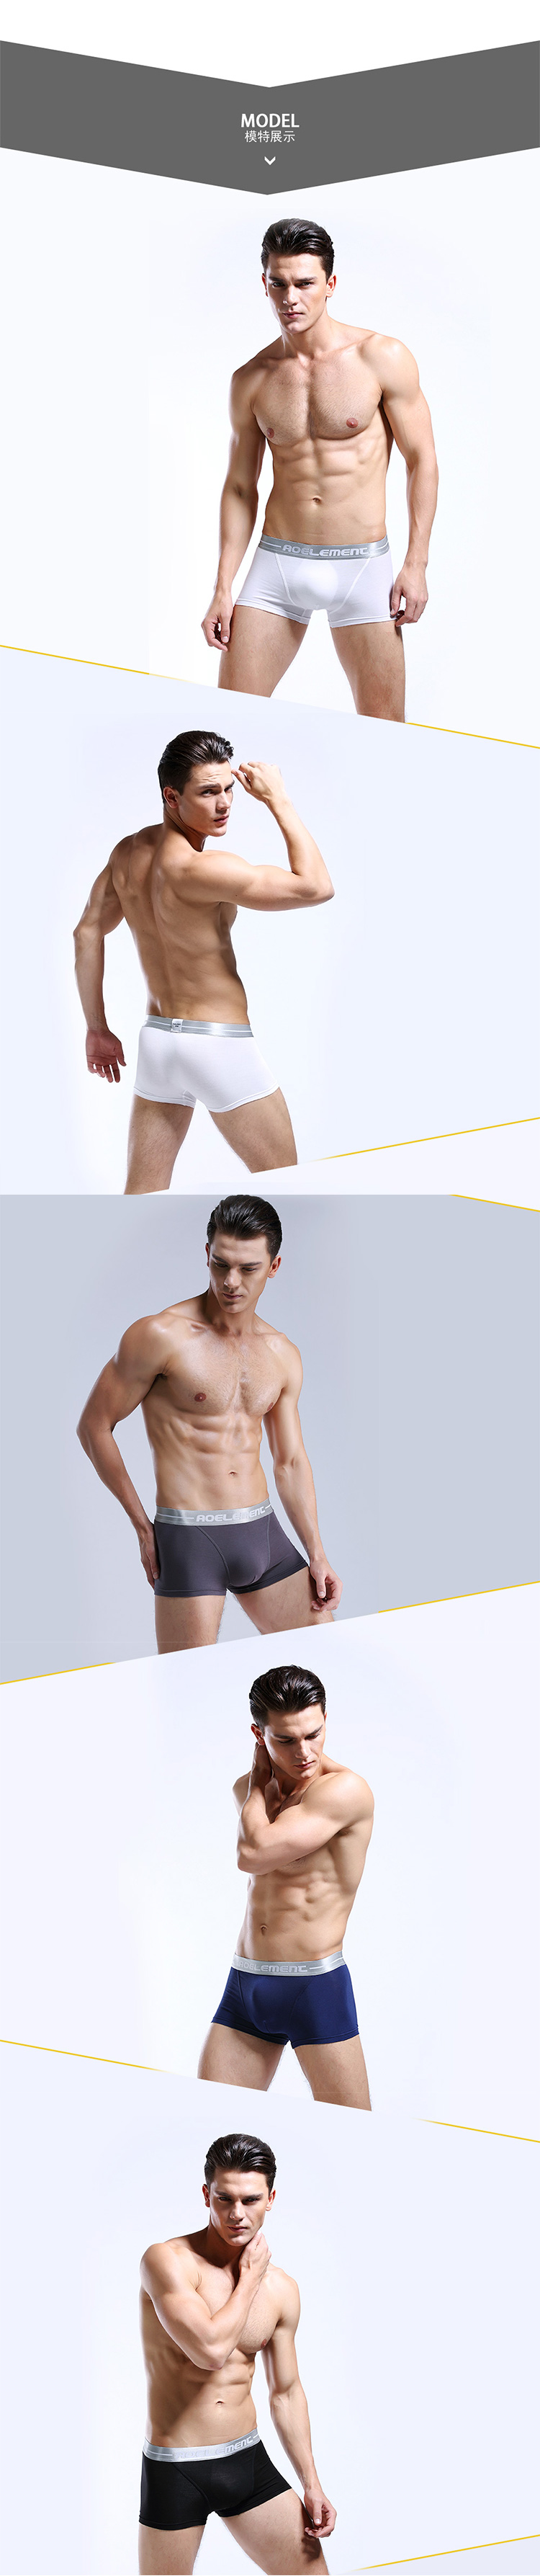 【HENIS】清爽透氣吸濕排汗速乾系列內褲(三款任選) M-2XL 高彈力設計